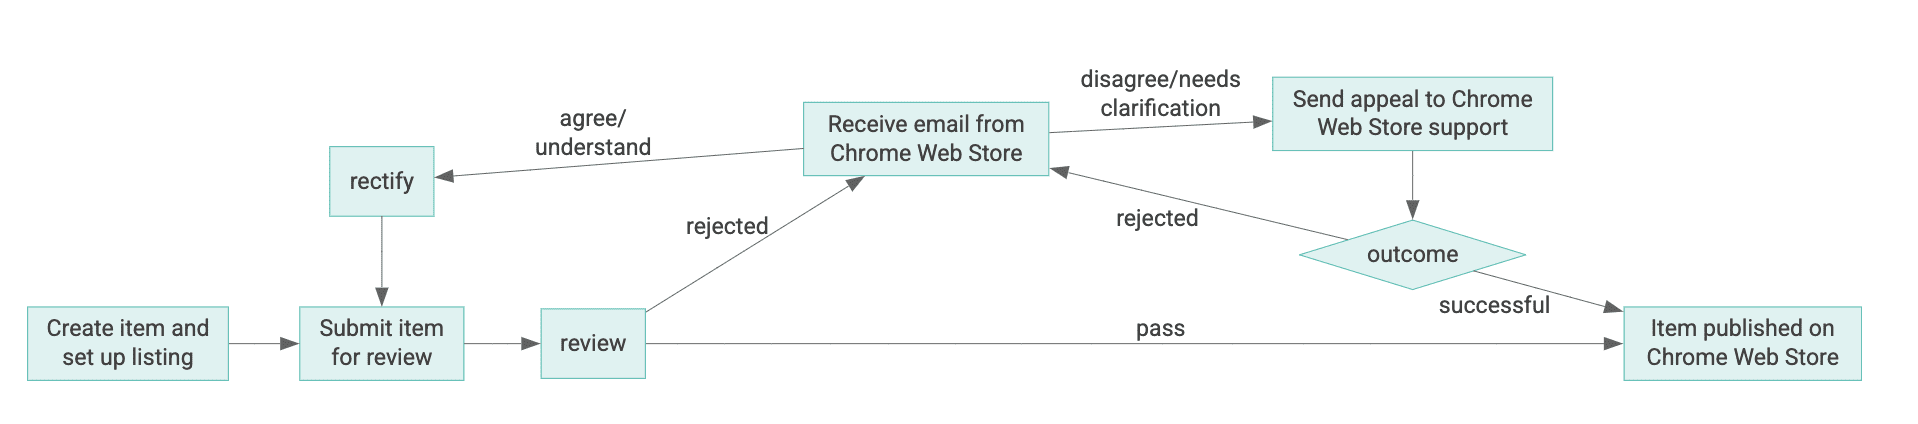 Diagrama do ciclo de vida de um item da Chrome Web Store